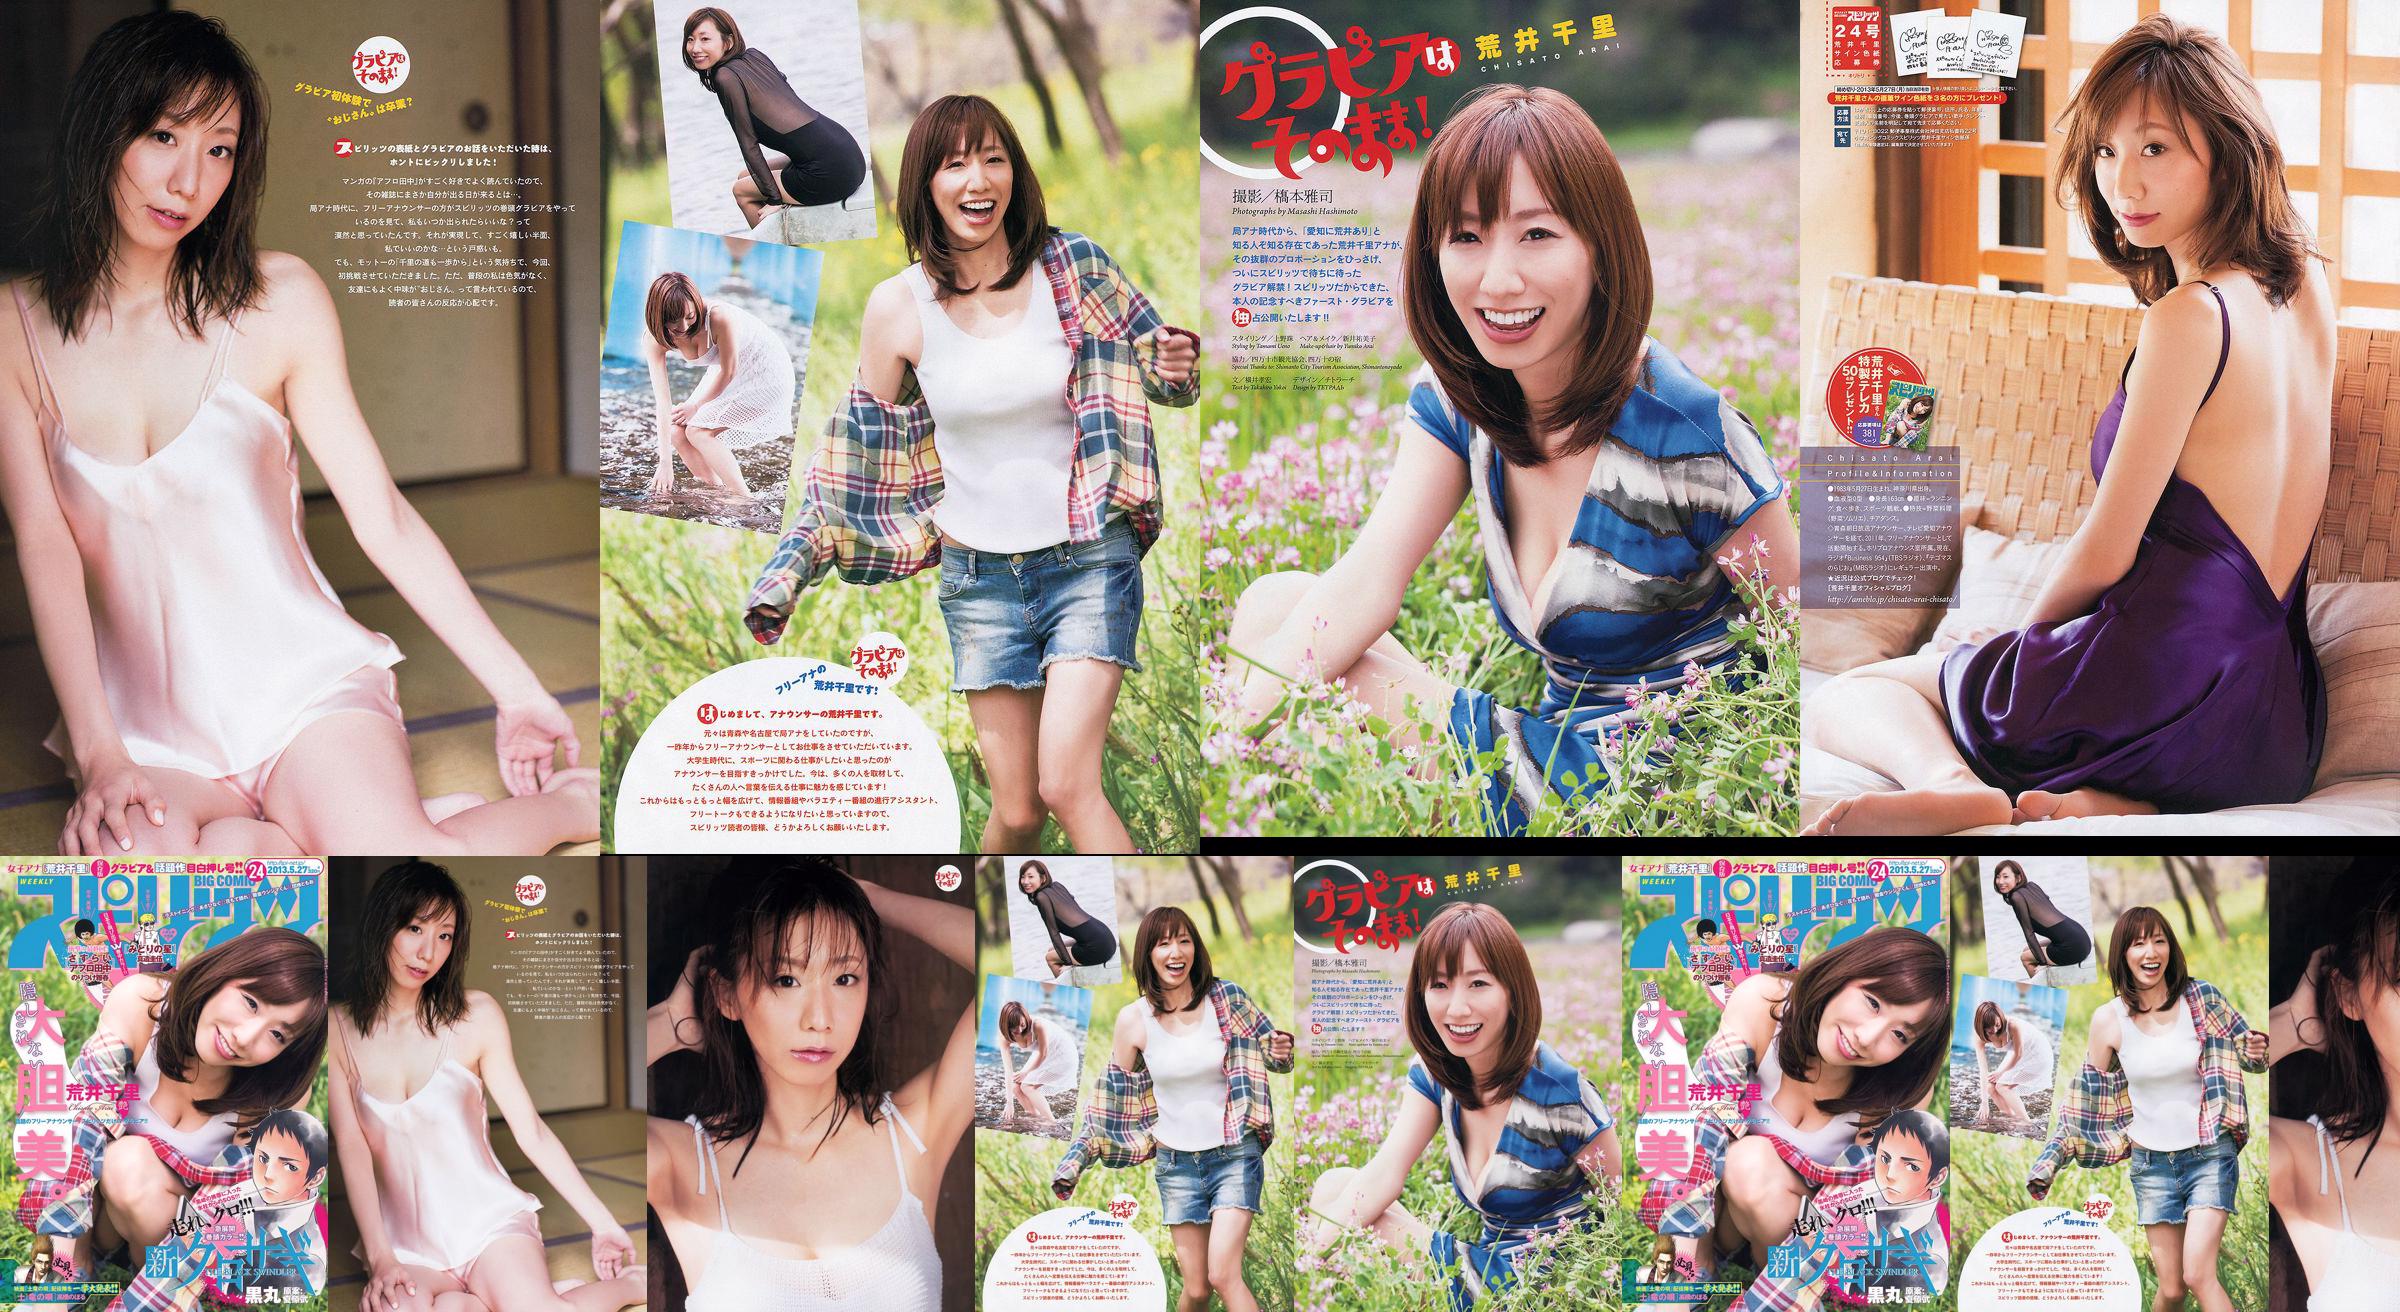 [Semangat Komik Besar Mingguan] Chisato Arai 2013 Majalah Foto No.24 No.b5686c Halaman 2